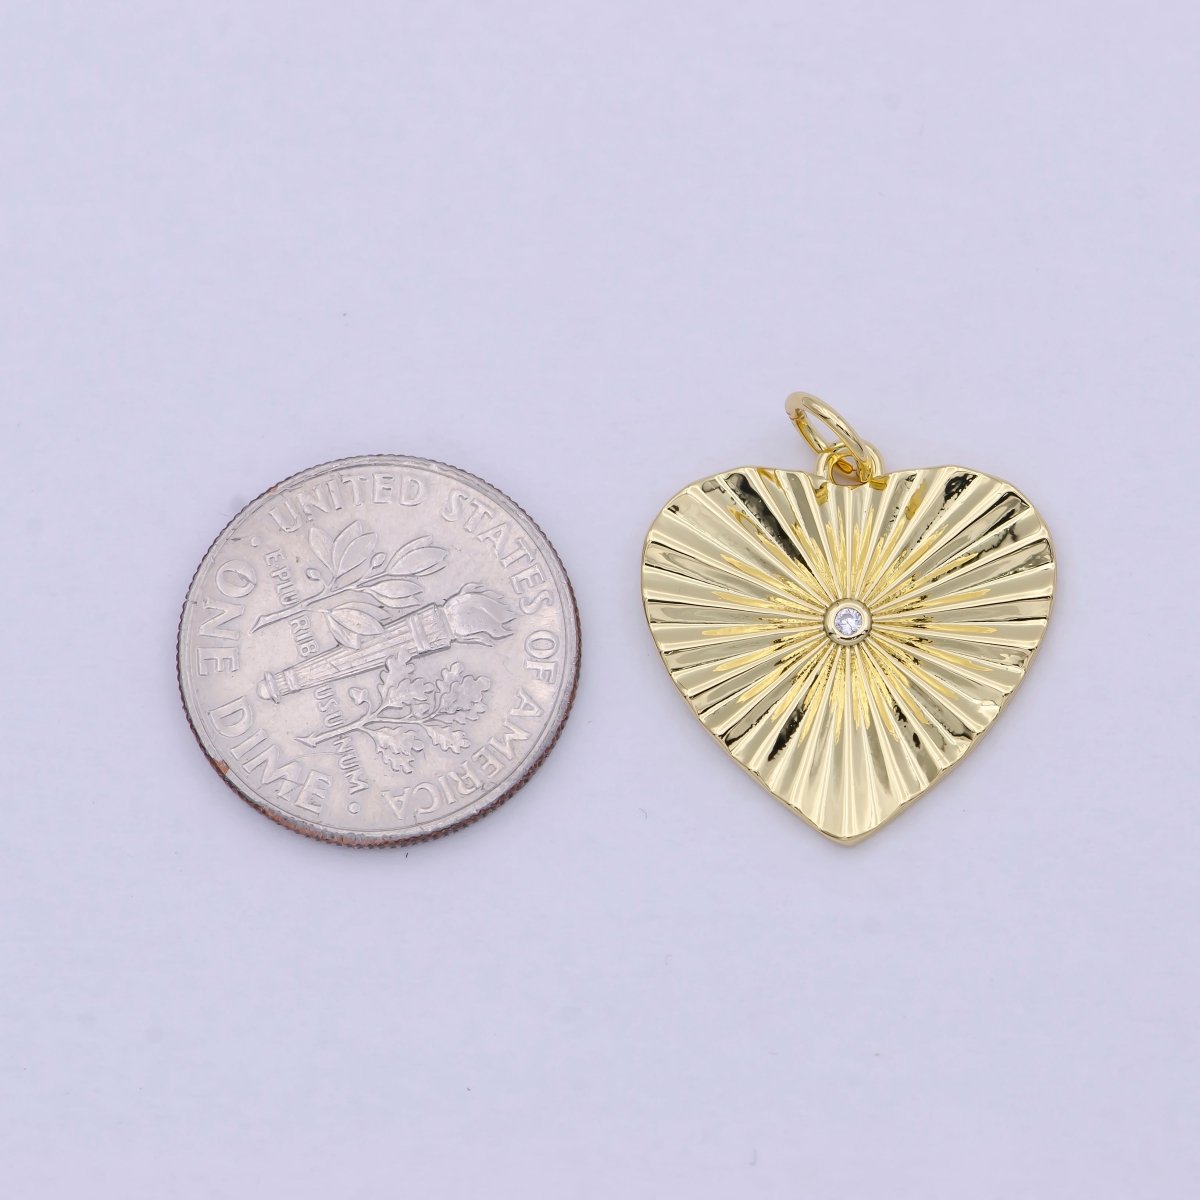 Mini Radiant Heart Charm Gold Filled Heart Pendant for Necklace Bracelet Earring Supply E-744 - DLUXCA